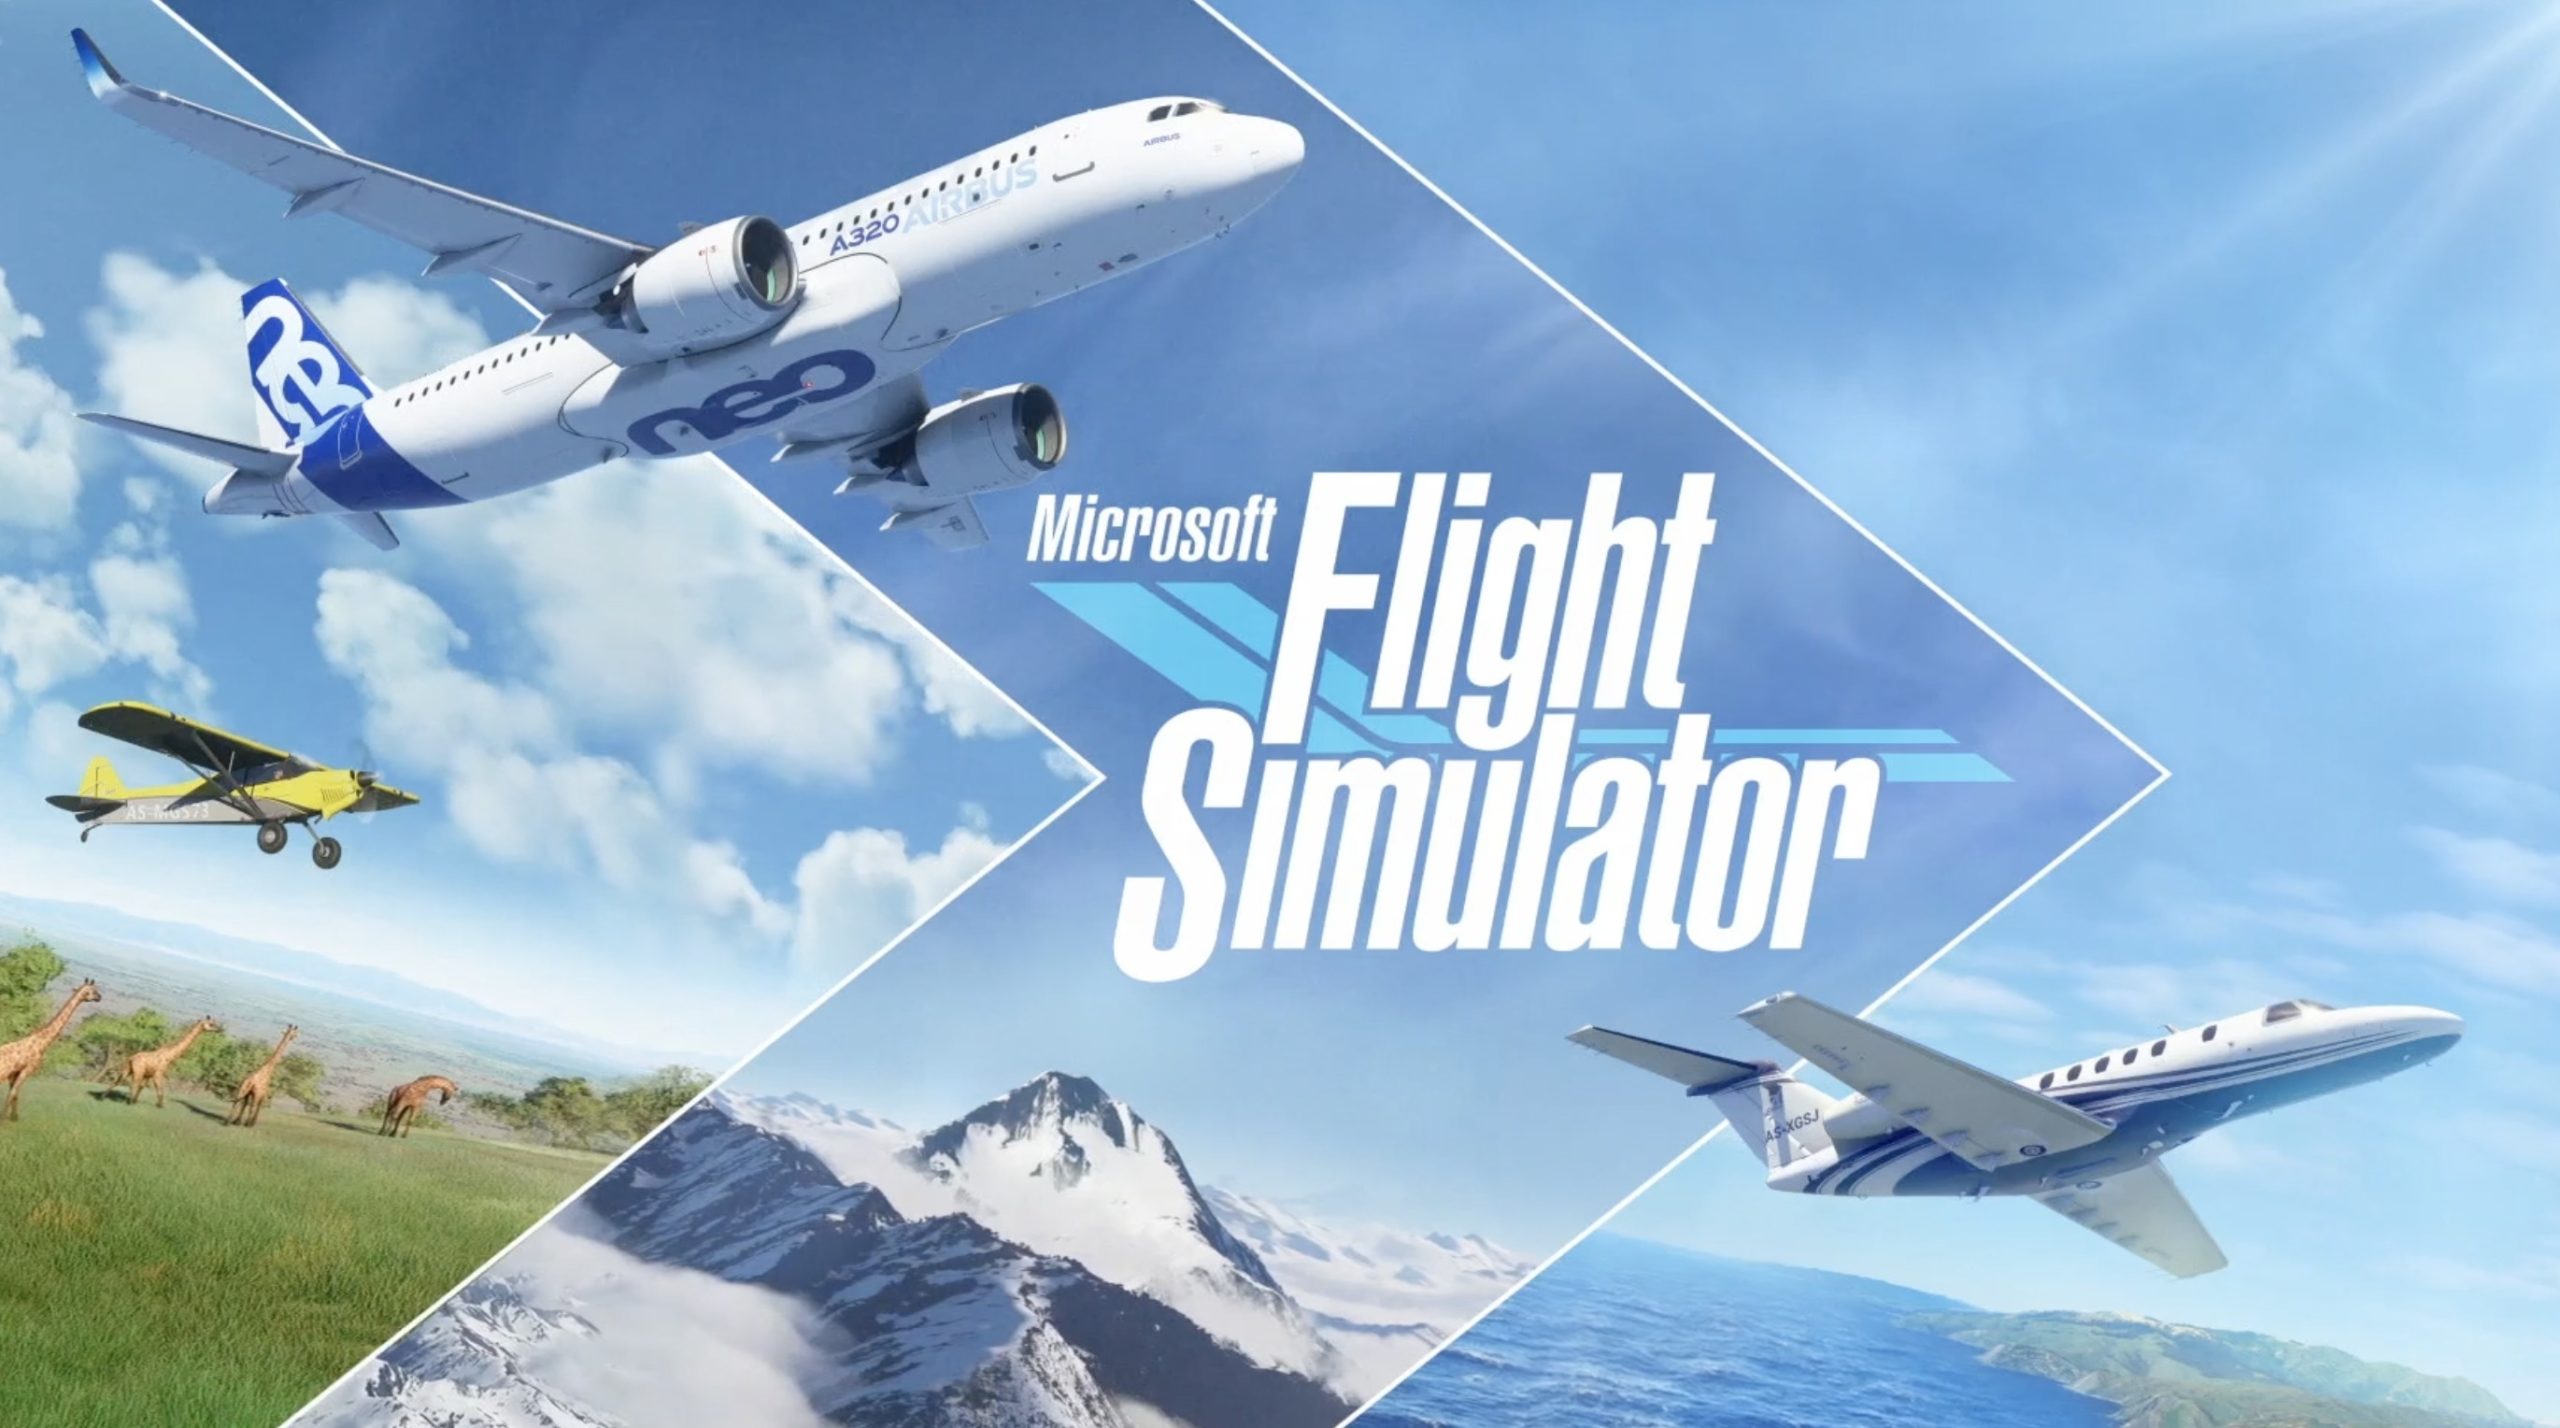 16インチ Macbook Pro で Microsoft Flight Simulator を動かしてみた モノ好き手帳